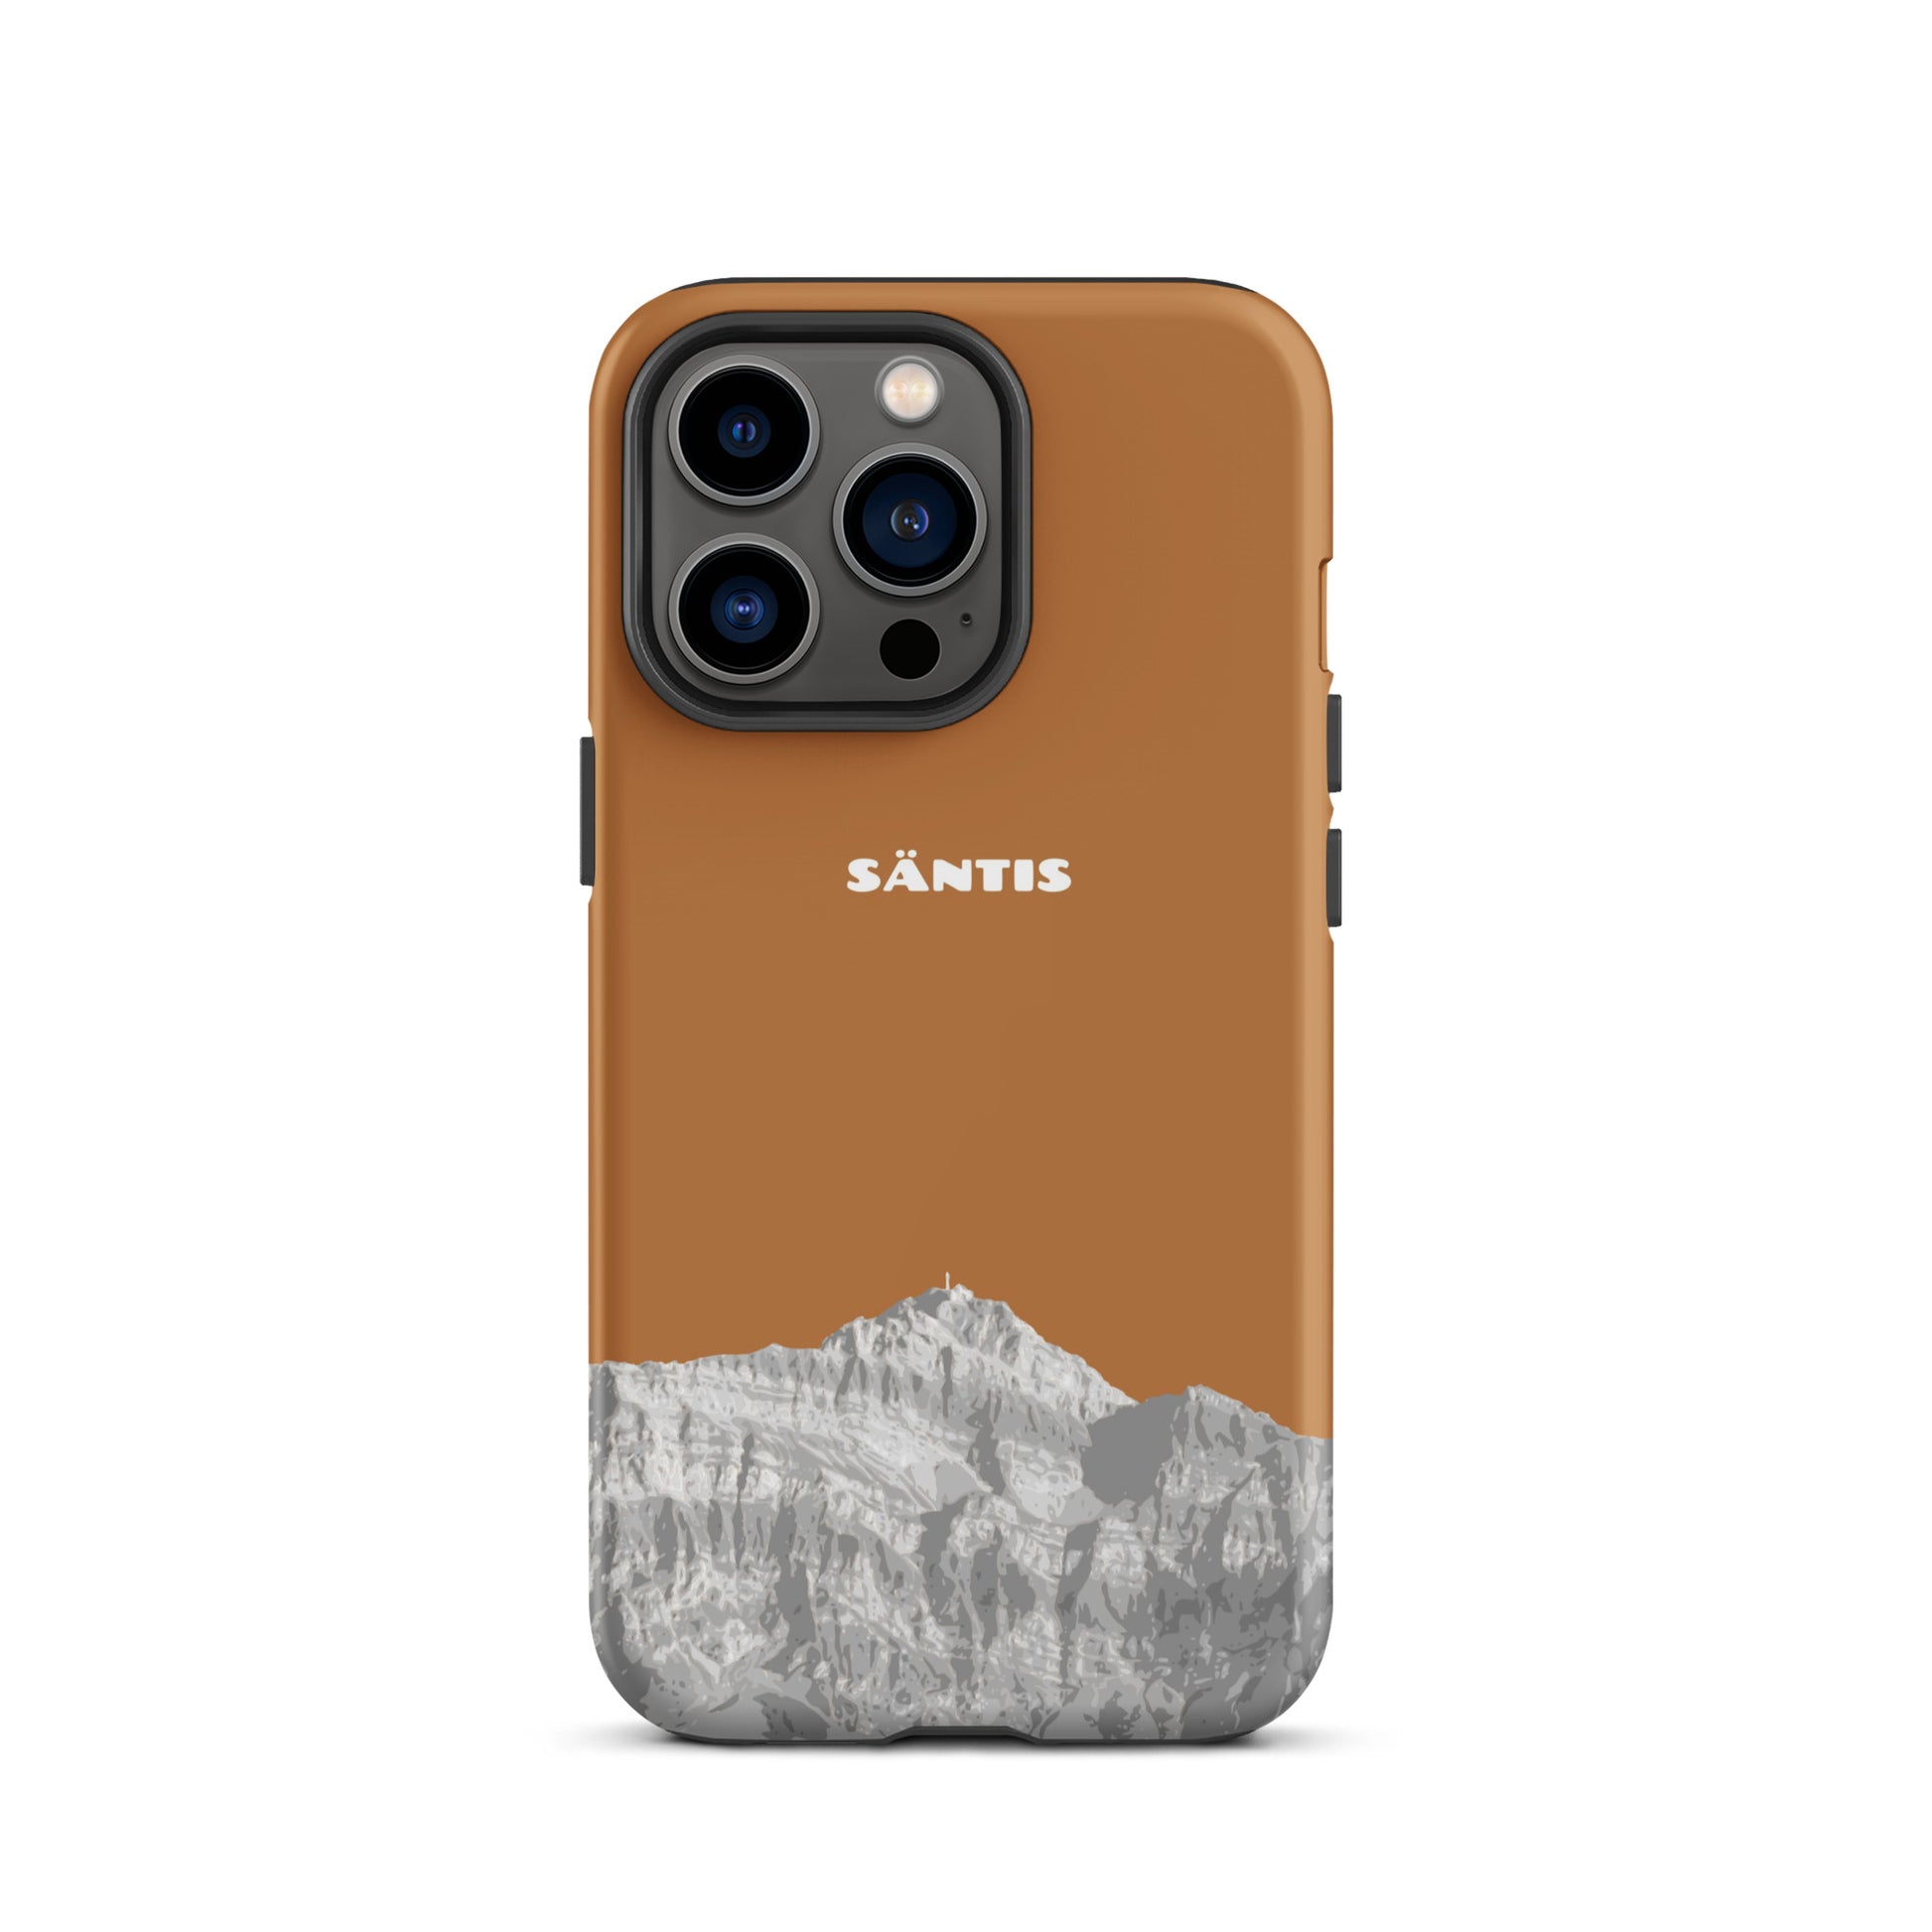 Hülle für das iPhone 13 Pro von Apple in der Farbe Kupfer, dass den Säntis im Alpstein zeigt.